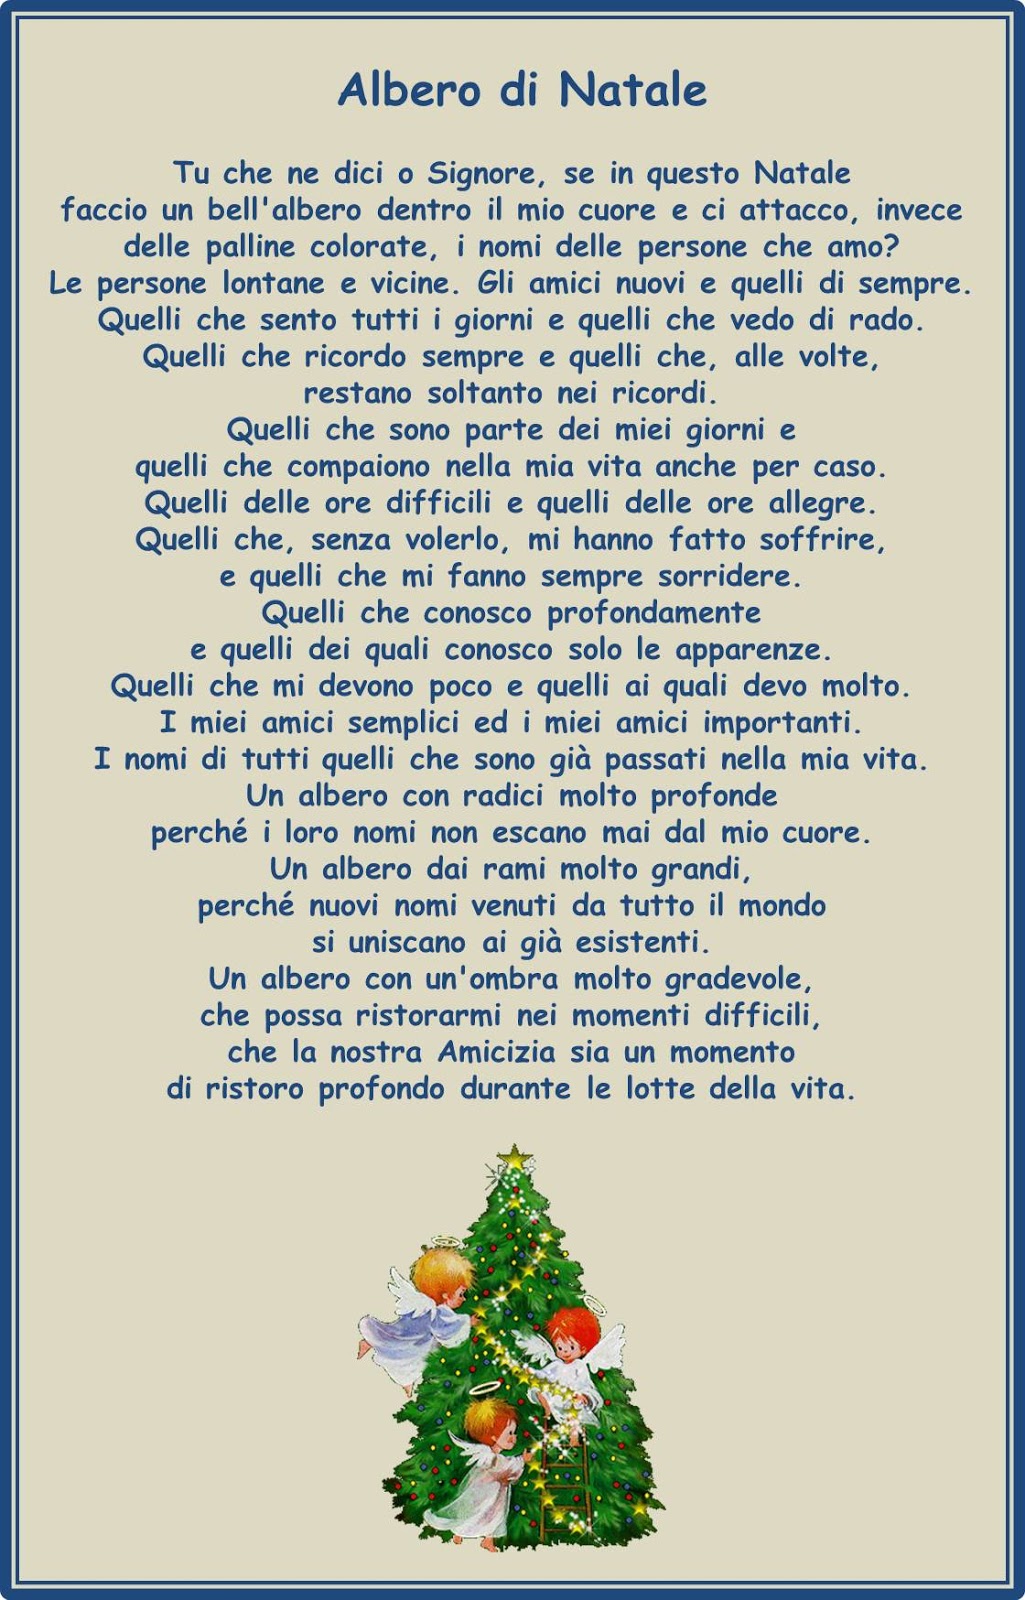 Poesia Di Natale Albero.Francesca Ceccherini Testi E Immagini Di Psicologia Sociale Religione Poesia Narrativa Poesia Dell Albero Di Natale